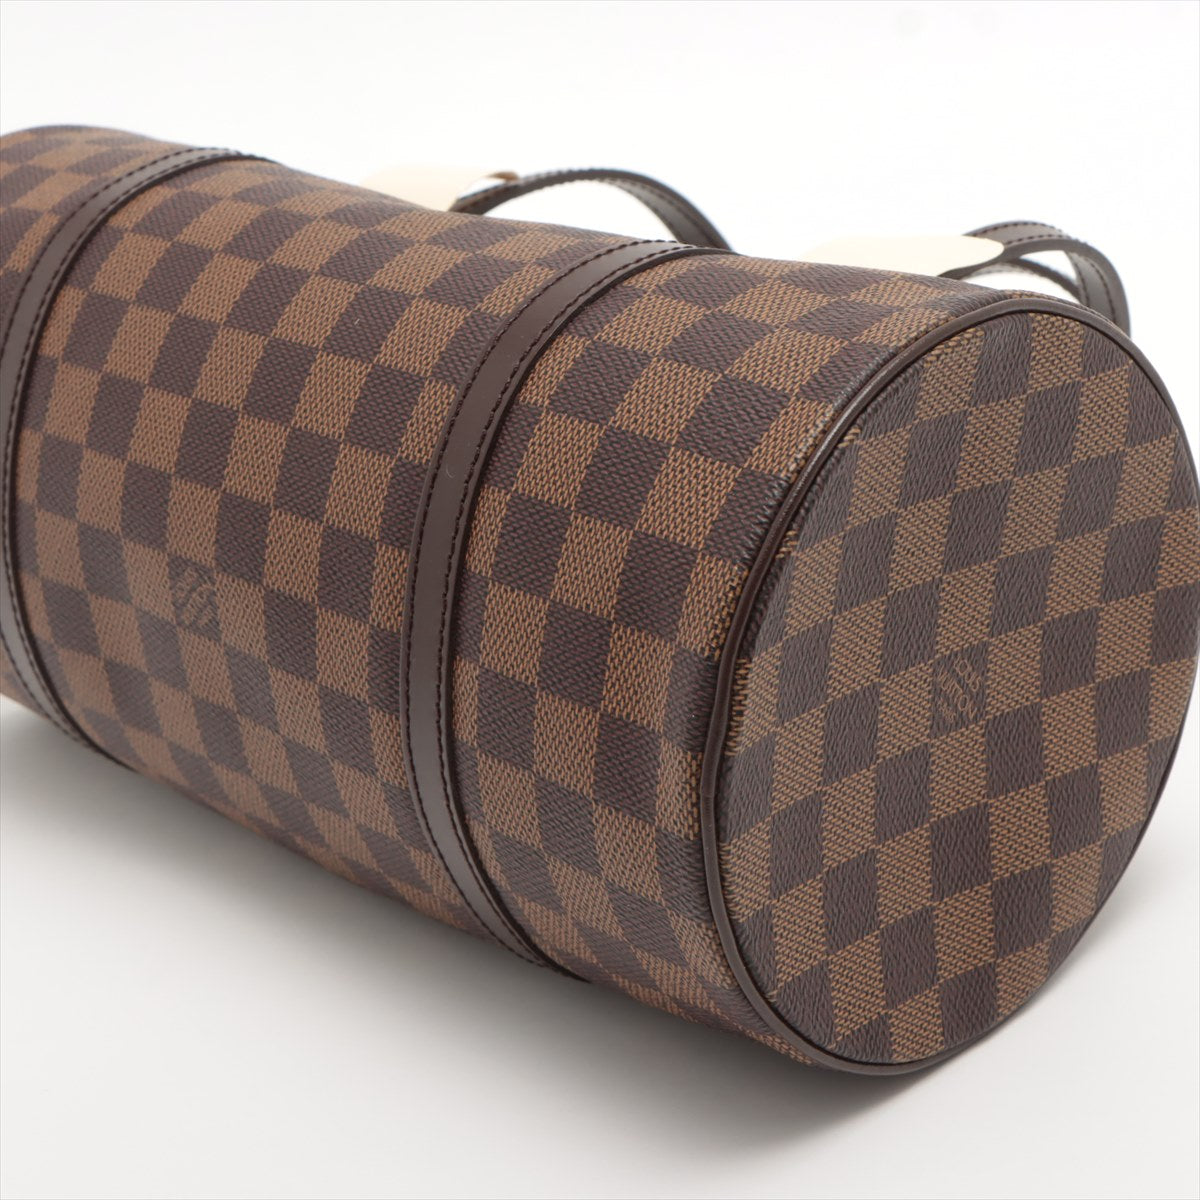 Louis Vuitton Damier Papillon 30 Shoulder Bag With Mini Bag - THE PURSE  AFFAIR